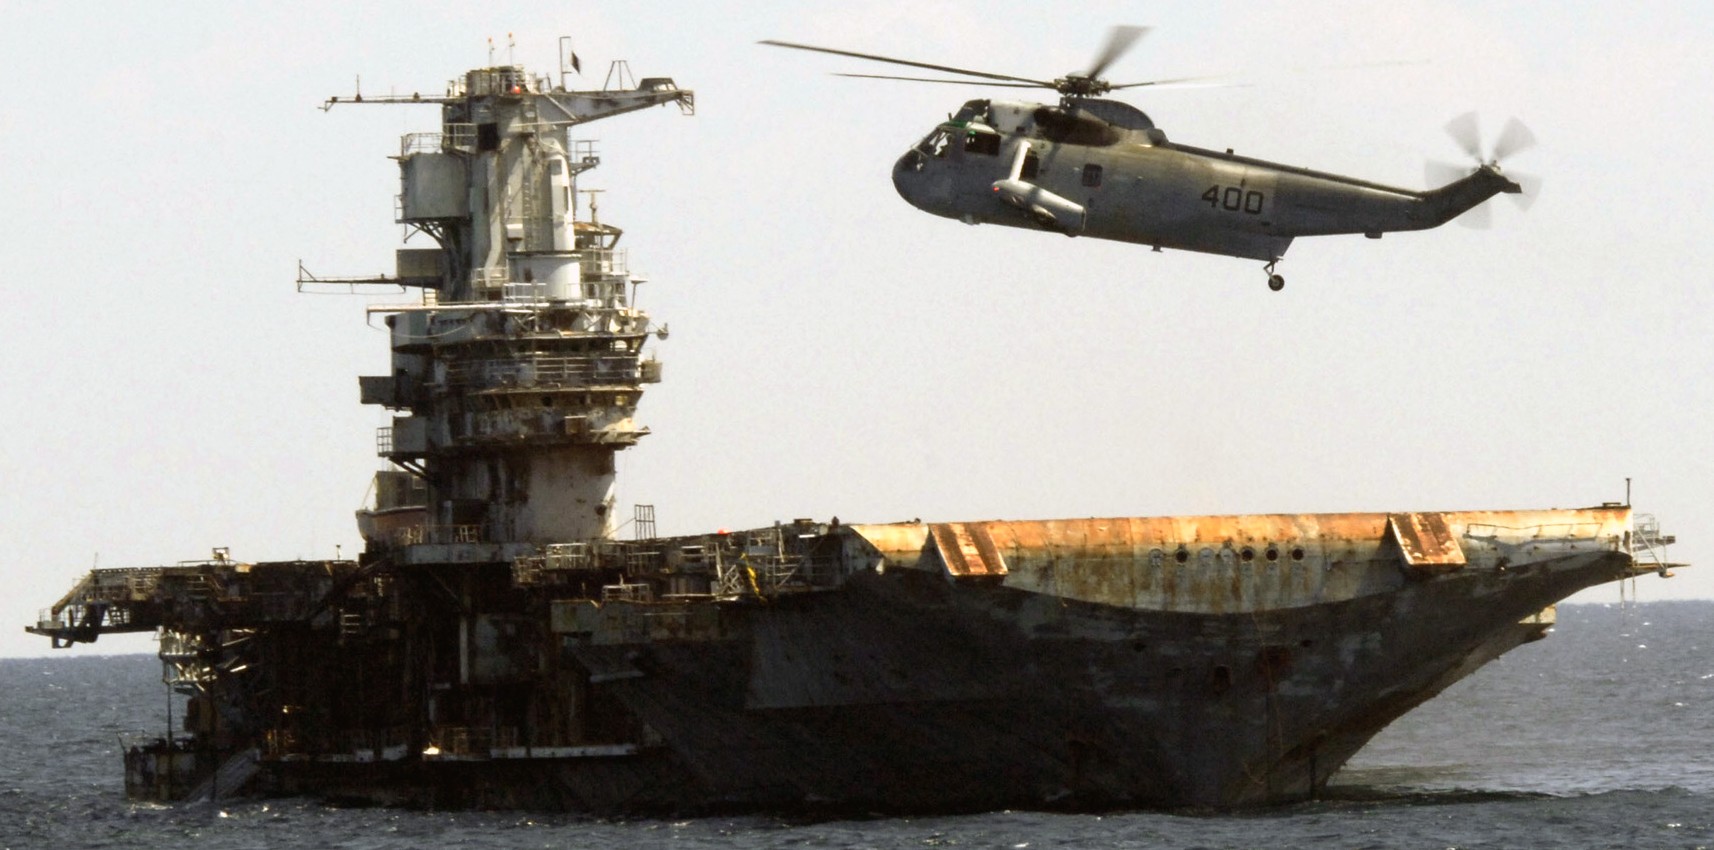 cv-34 uss oriskany essex class aircraft carrier us navy sinking artificial reef off florida 106